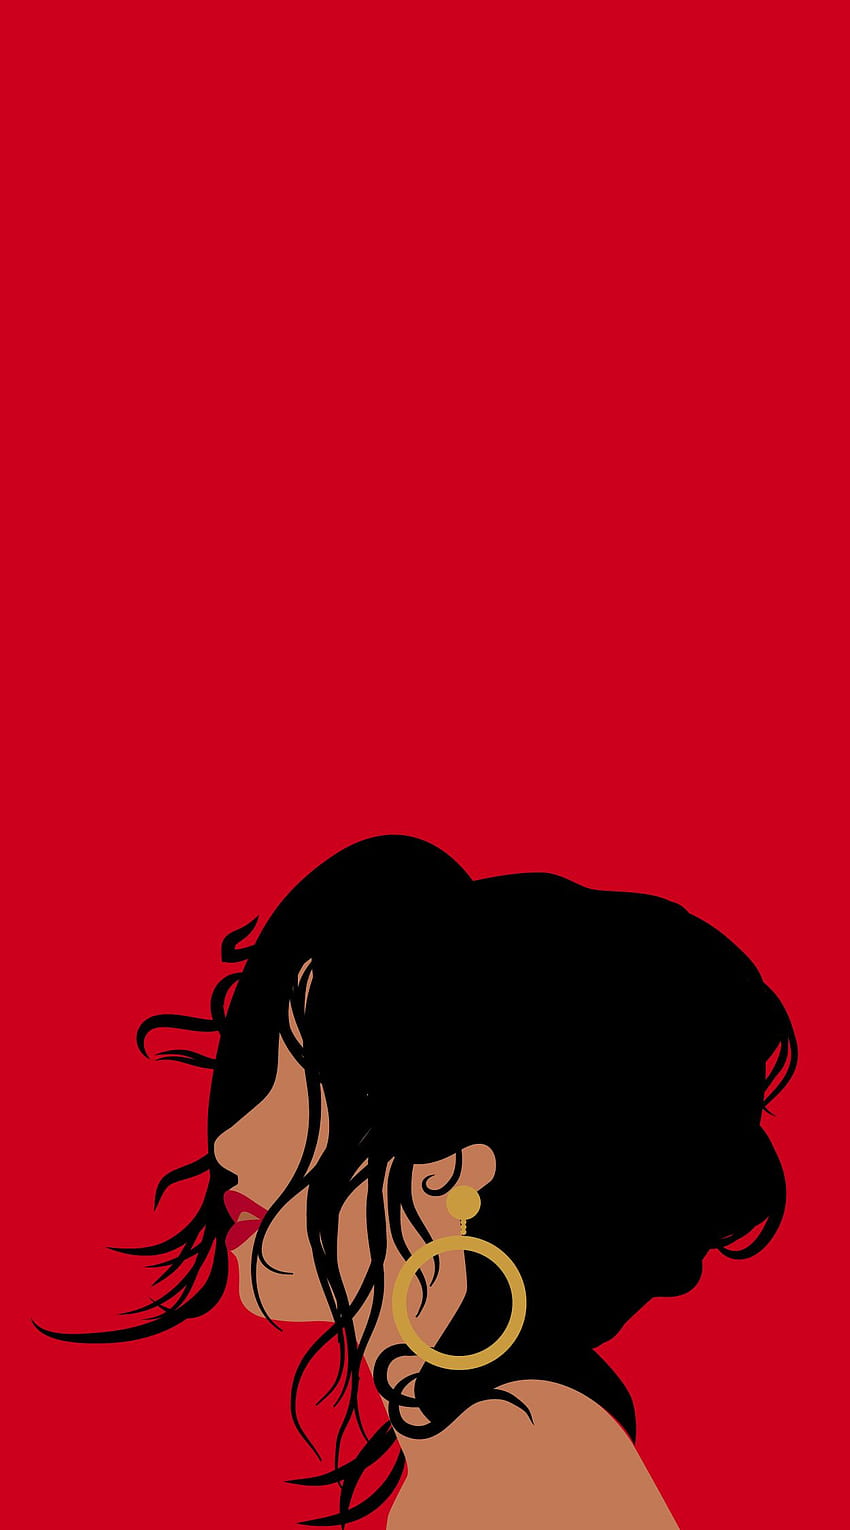 Esta es una ilustración de la portada del single de Camila Cabello para Havana que me encantó. Las características reales de la portada y la ..., fácil camila cabello fondo de pantalla del teléfono